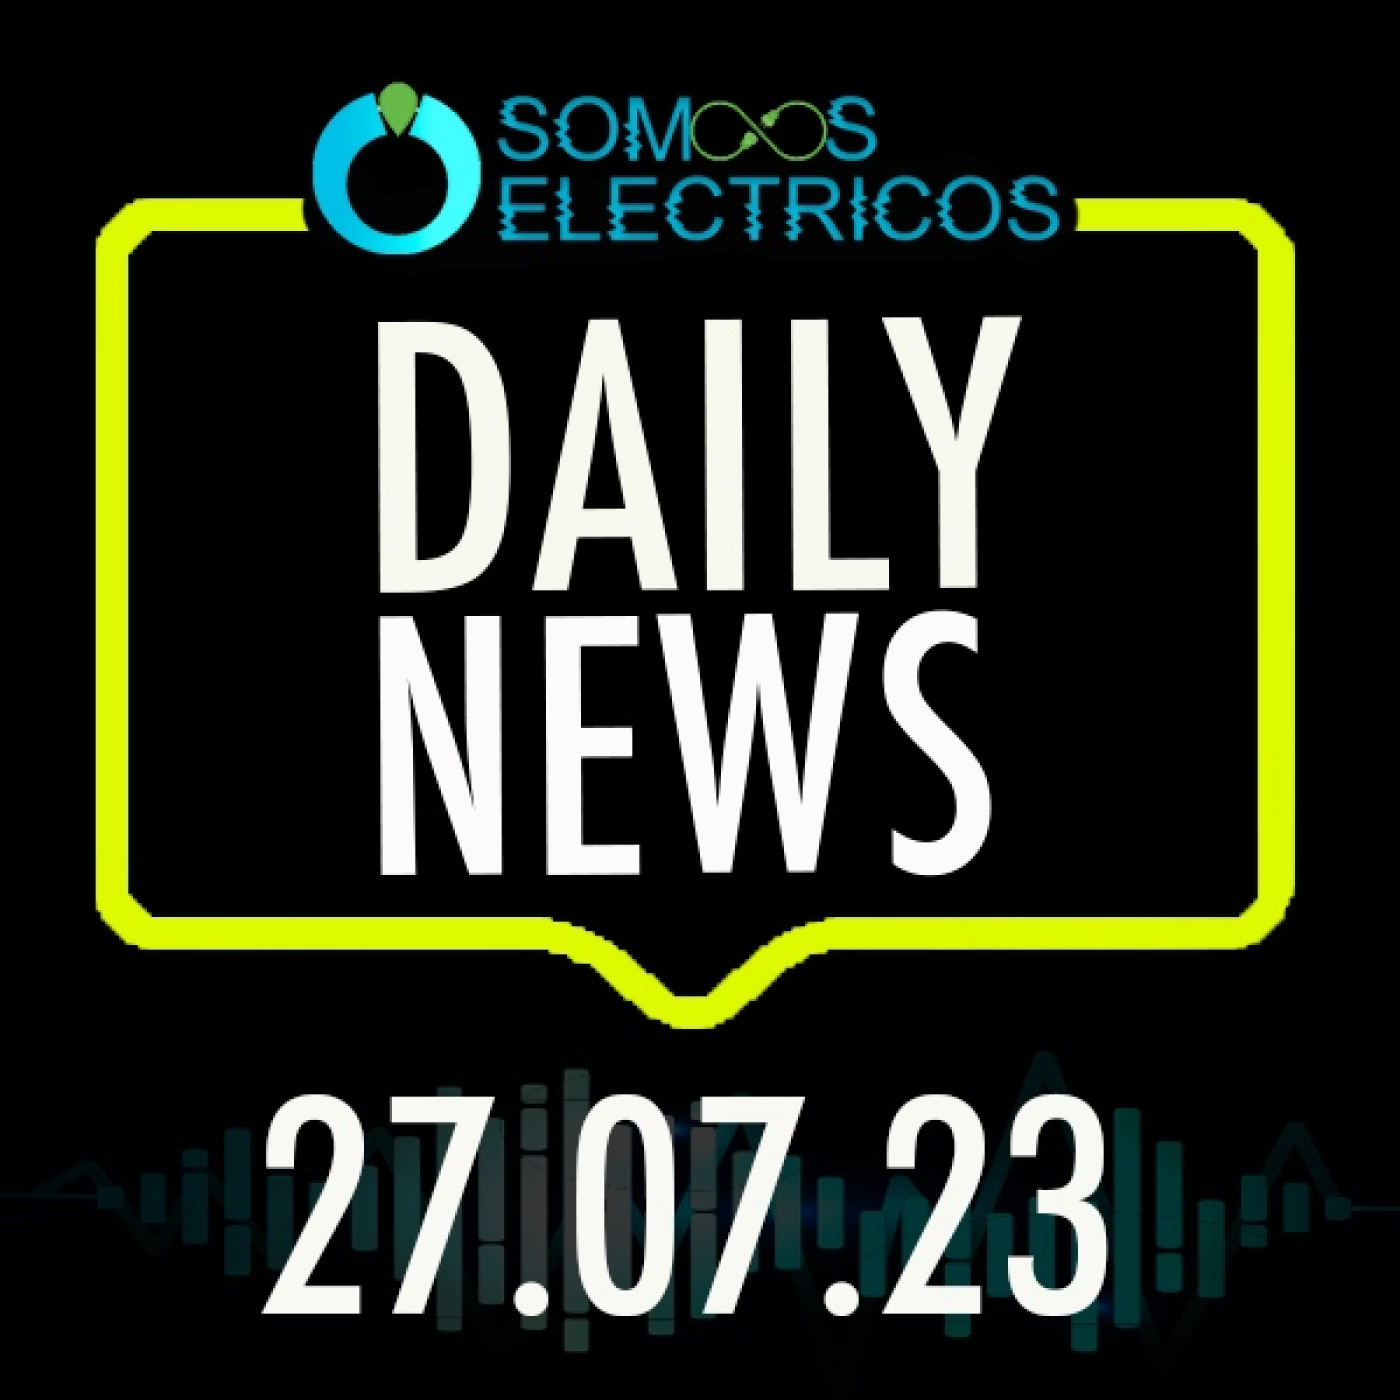 Las ventas de COCHES ELÉCTRICOS ya SUPERA a los COCHES DIÉSEL en EUROPA | EP110| 27/07/2023